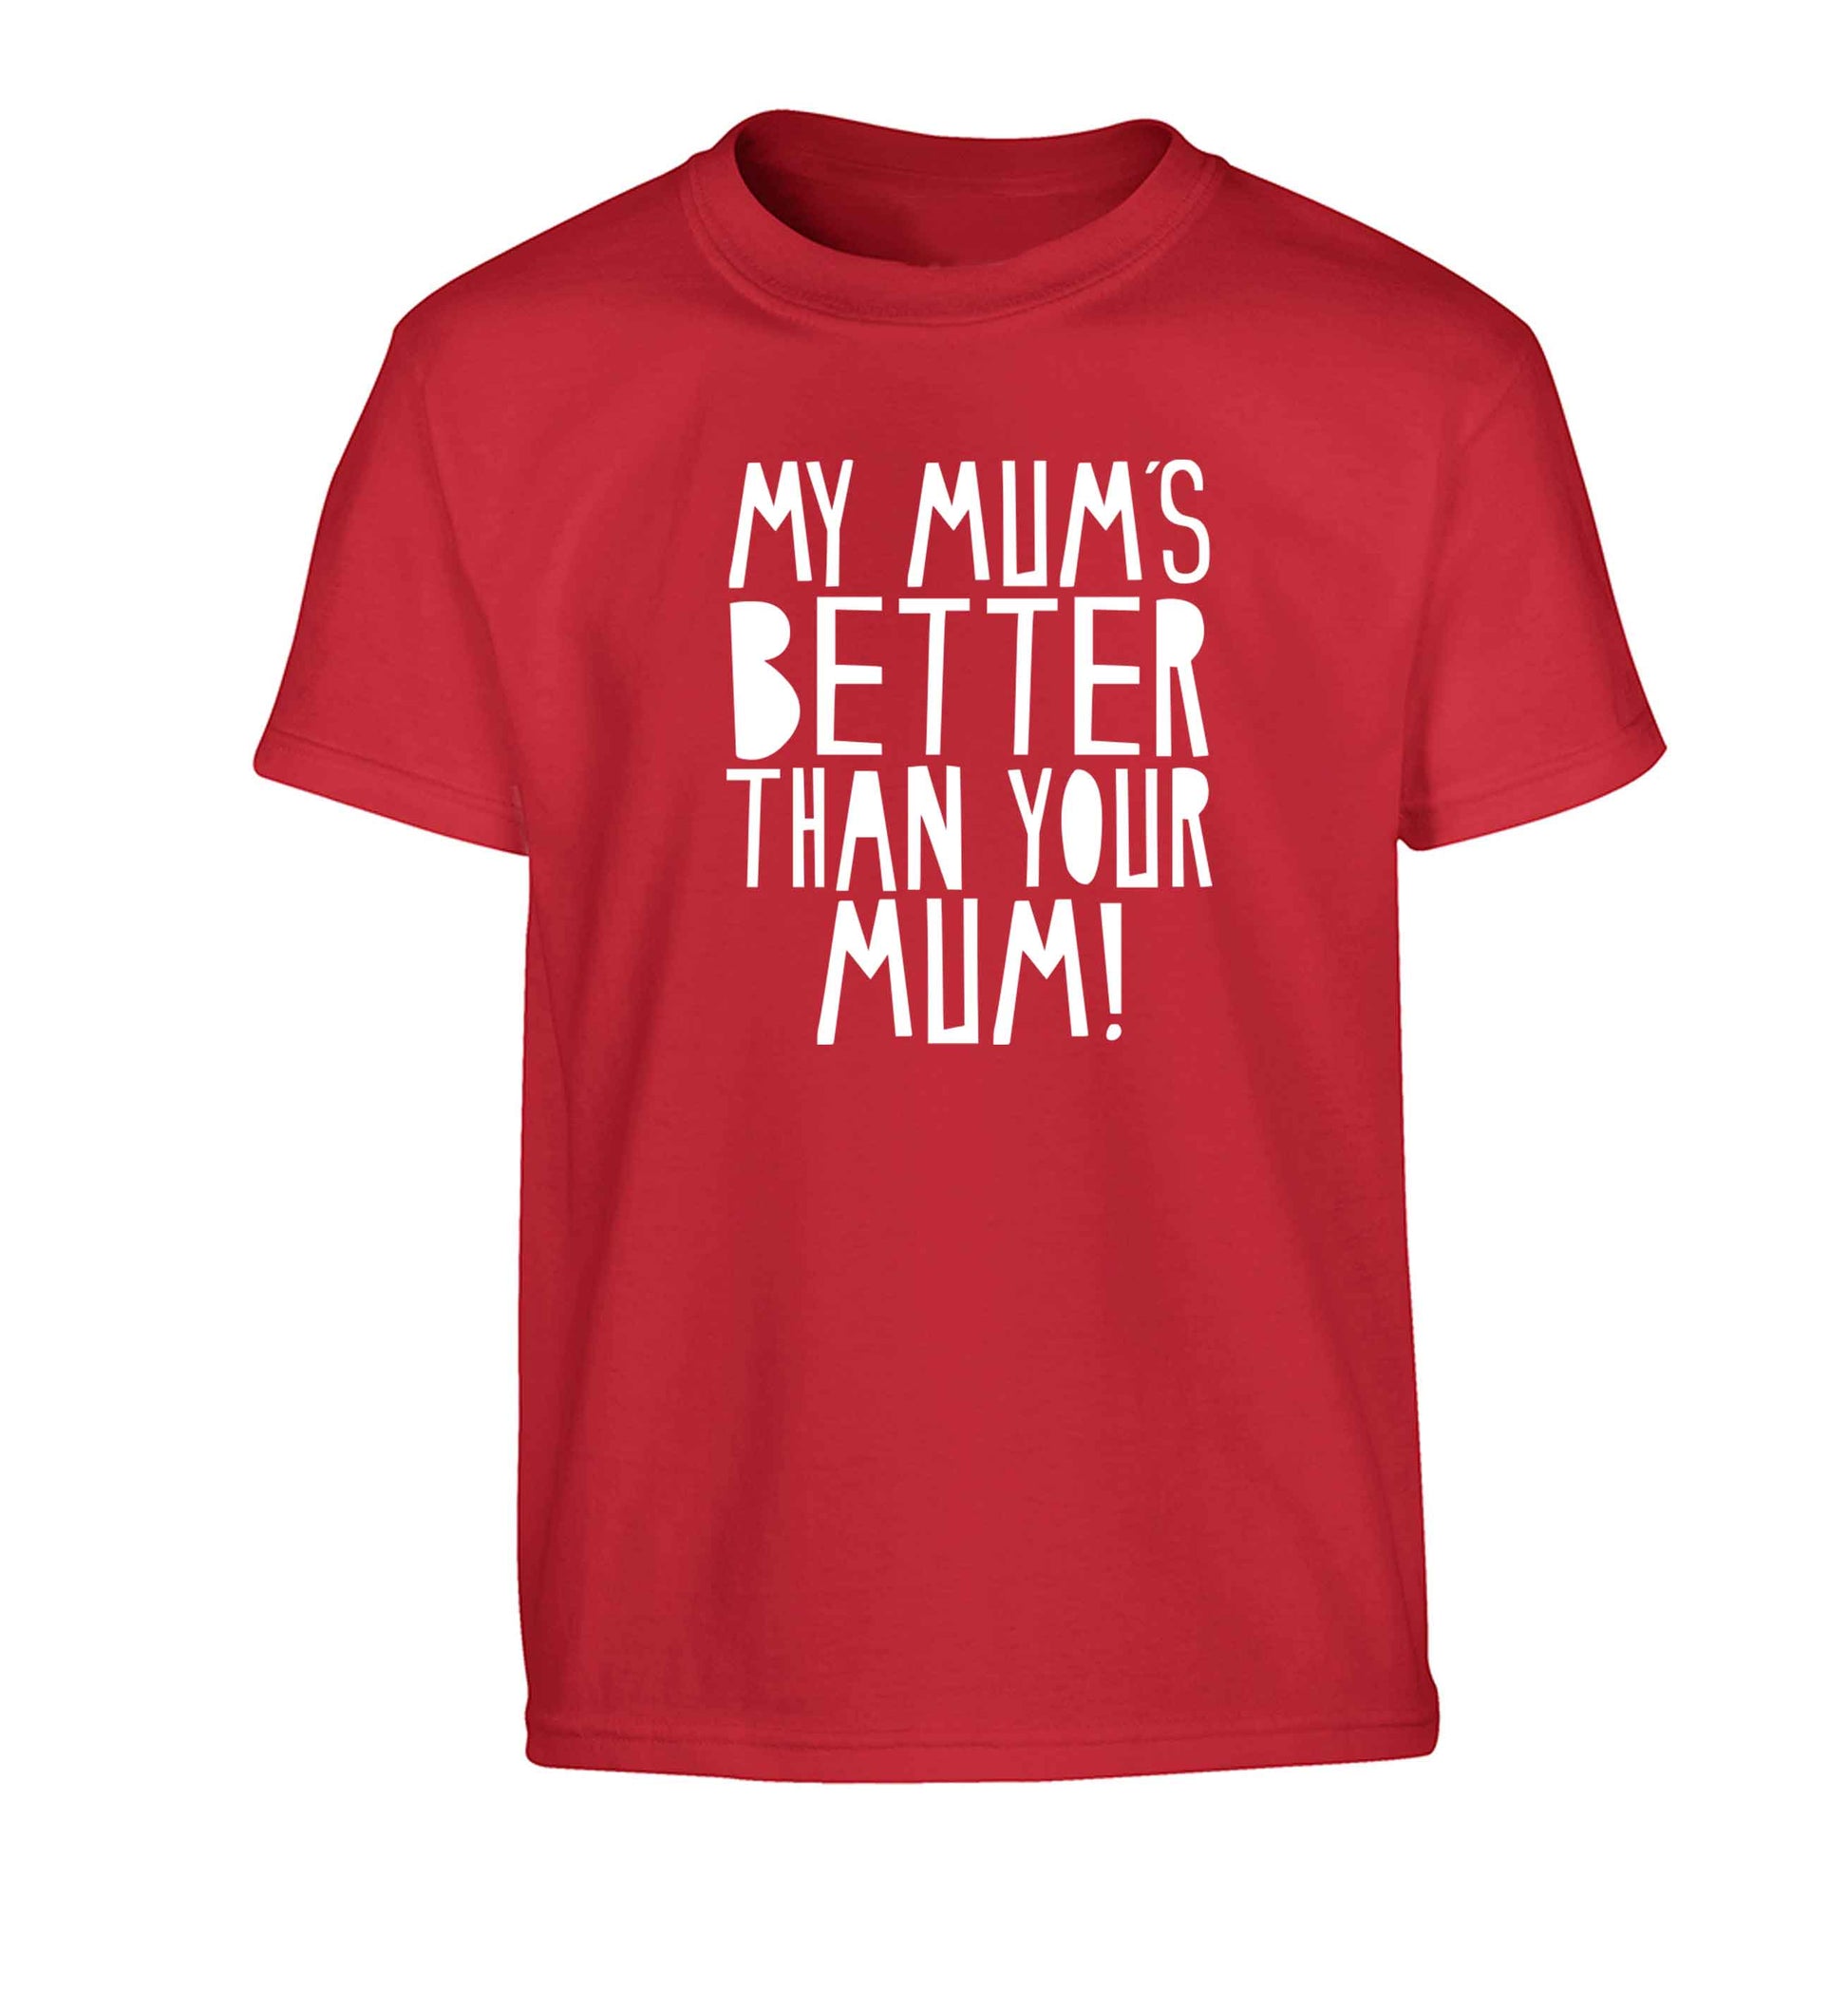 My mum's better than your mum Children's red Tshirt 12-13 Years